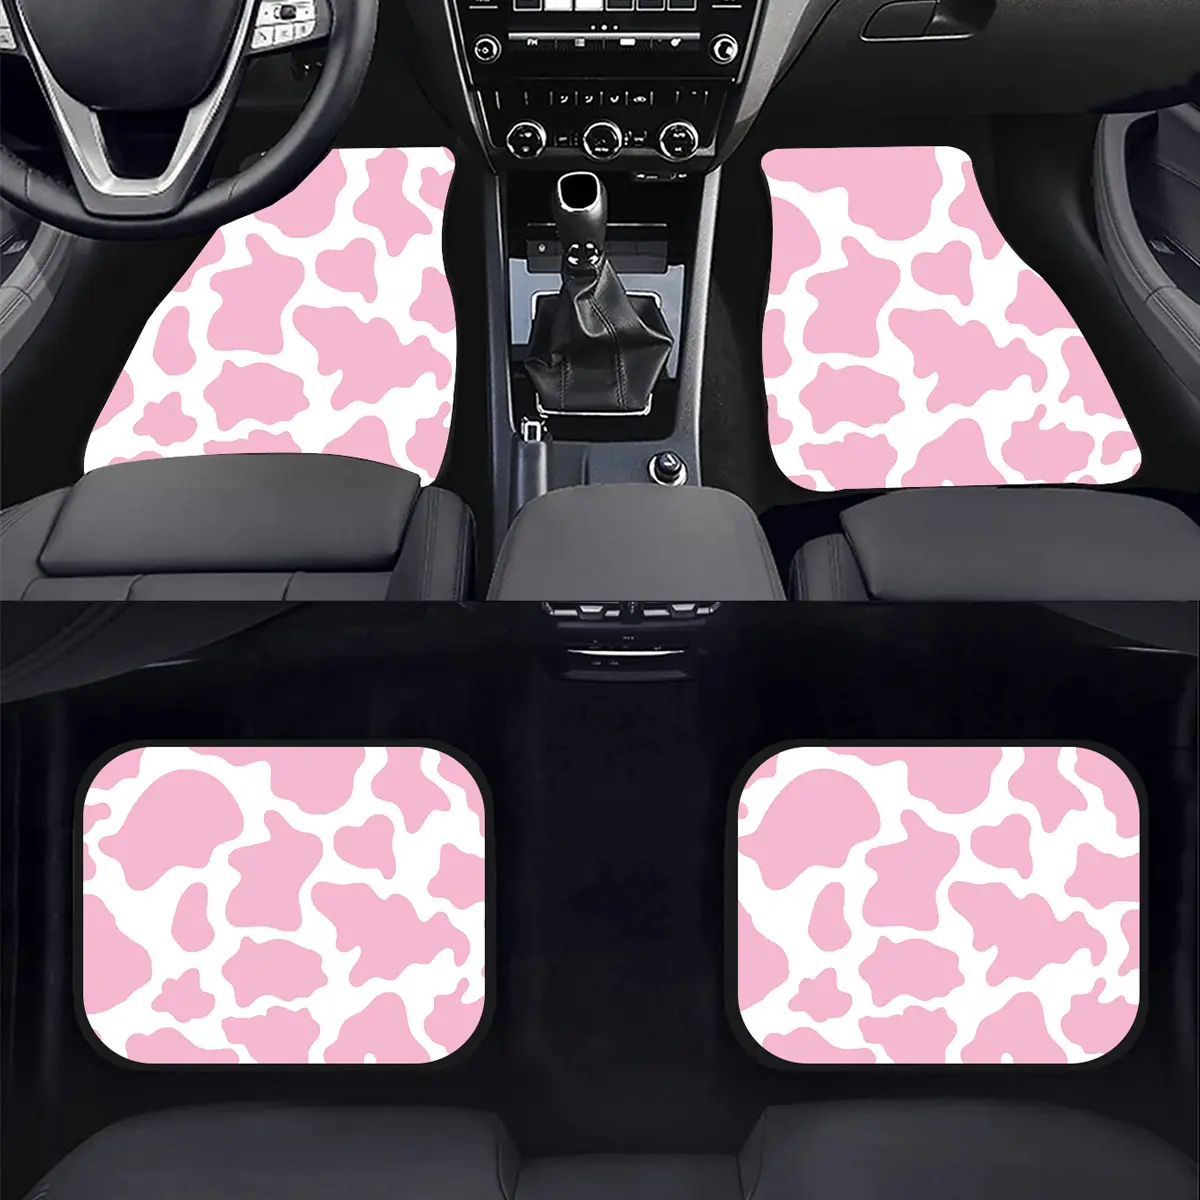 Tappetino per auto con motivo leopardato rosa universale in gomma tappetino per auto con stampa di grandi mucche di moda